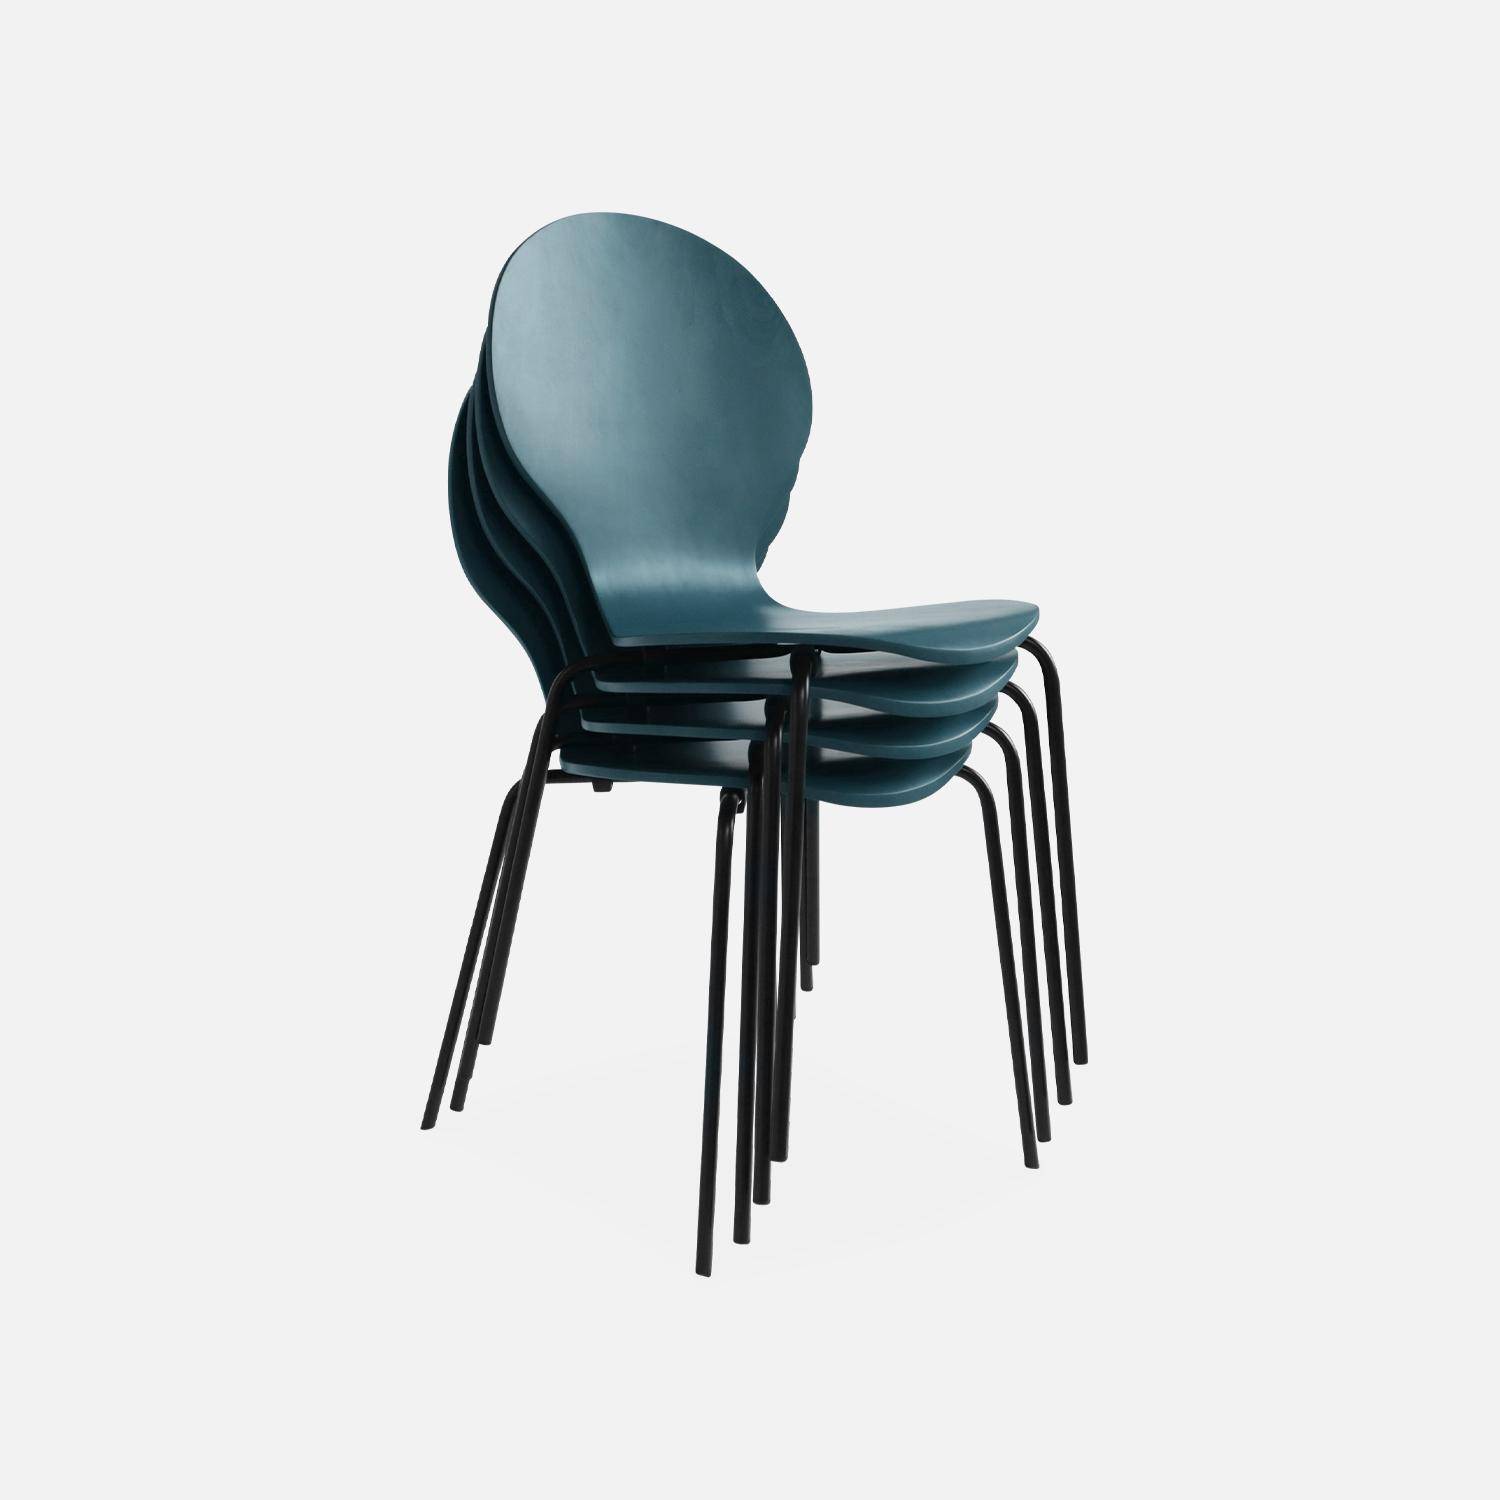 4er Set stapelbare Retro-Stühle in blau, Hevea-Holz und Sperrholz, Beine aus Stahl, Naomi, B 43 x T 48 x H 87cm,sweeek,Photo6